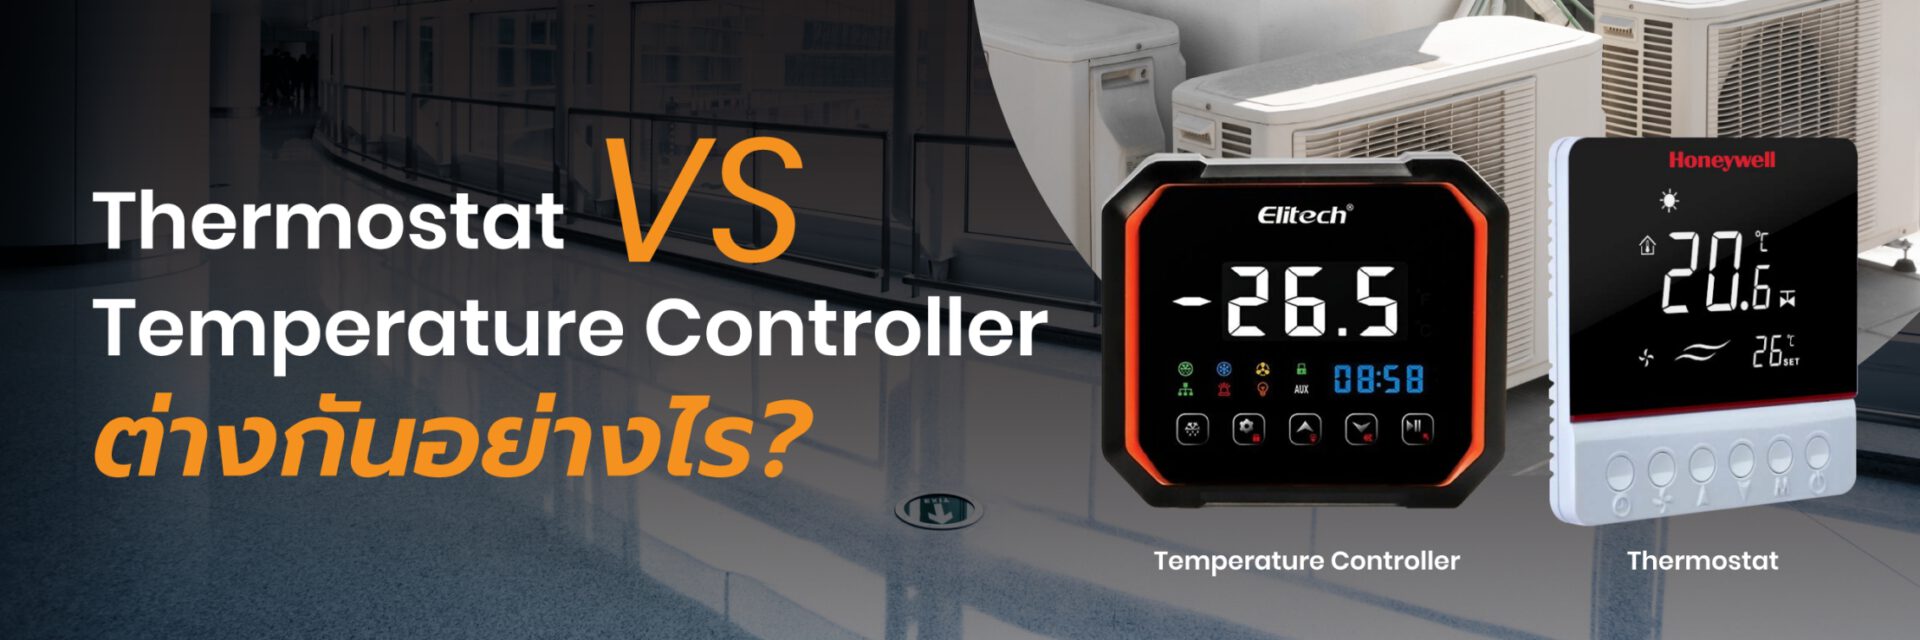 ความแตกต่างของ Thermostat กับ Temperature Controller